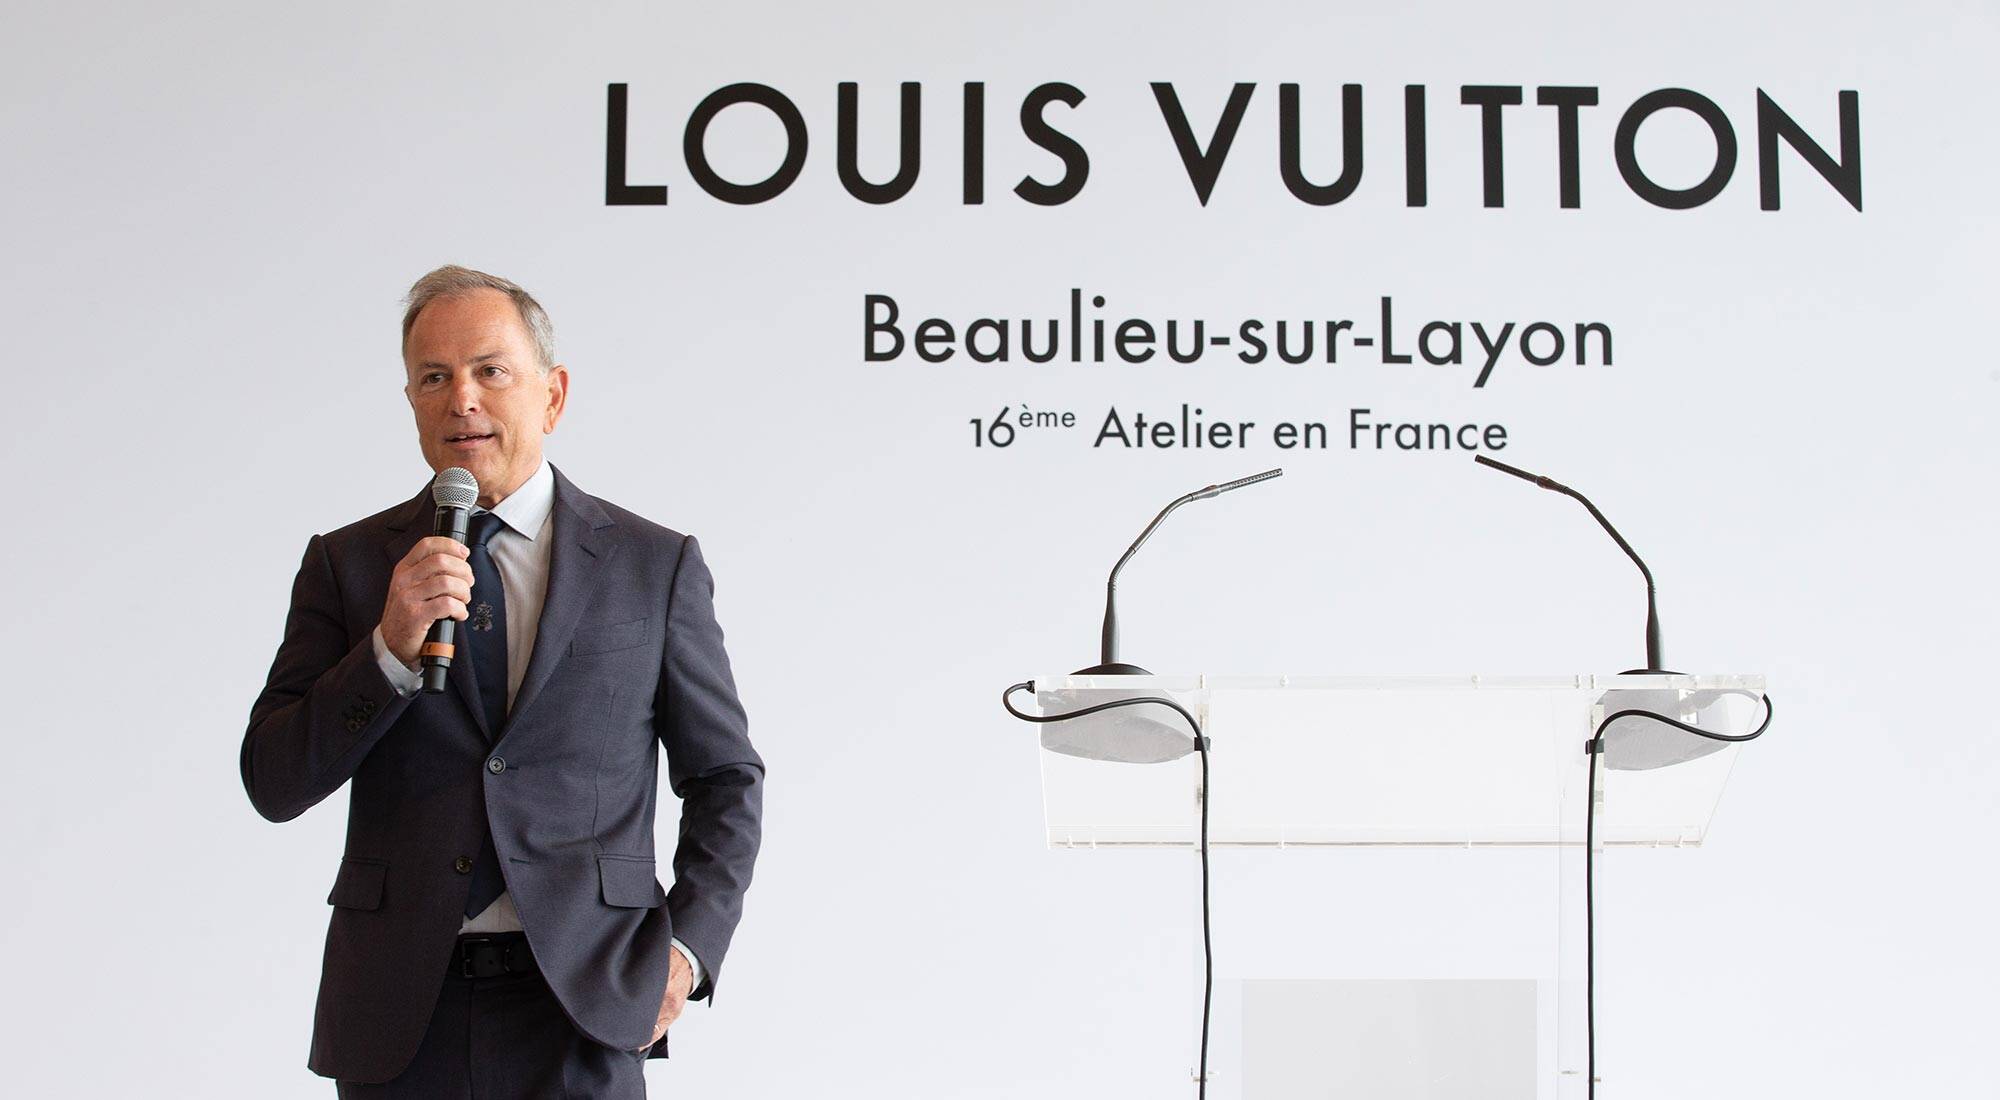 LVMH's Les Journées Particulières 2022 in Paris: Louis Vuitton Asnières  Workshops 